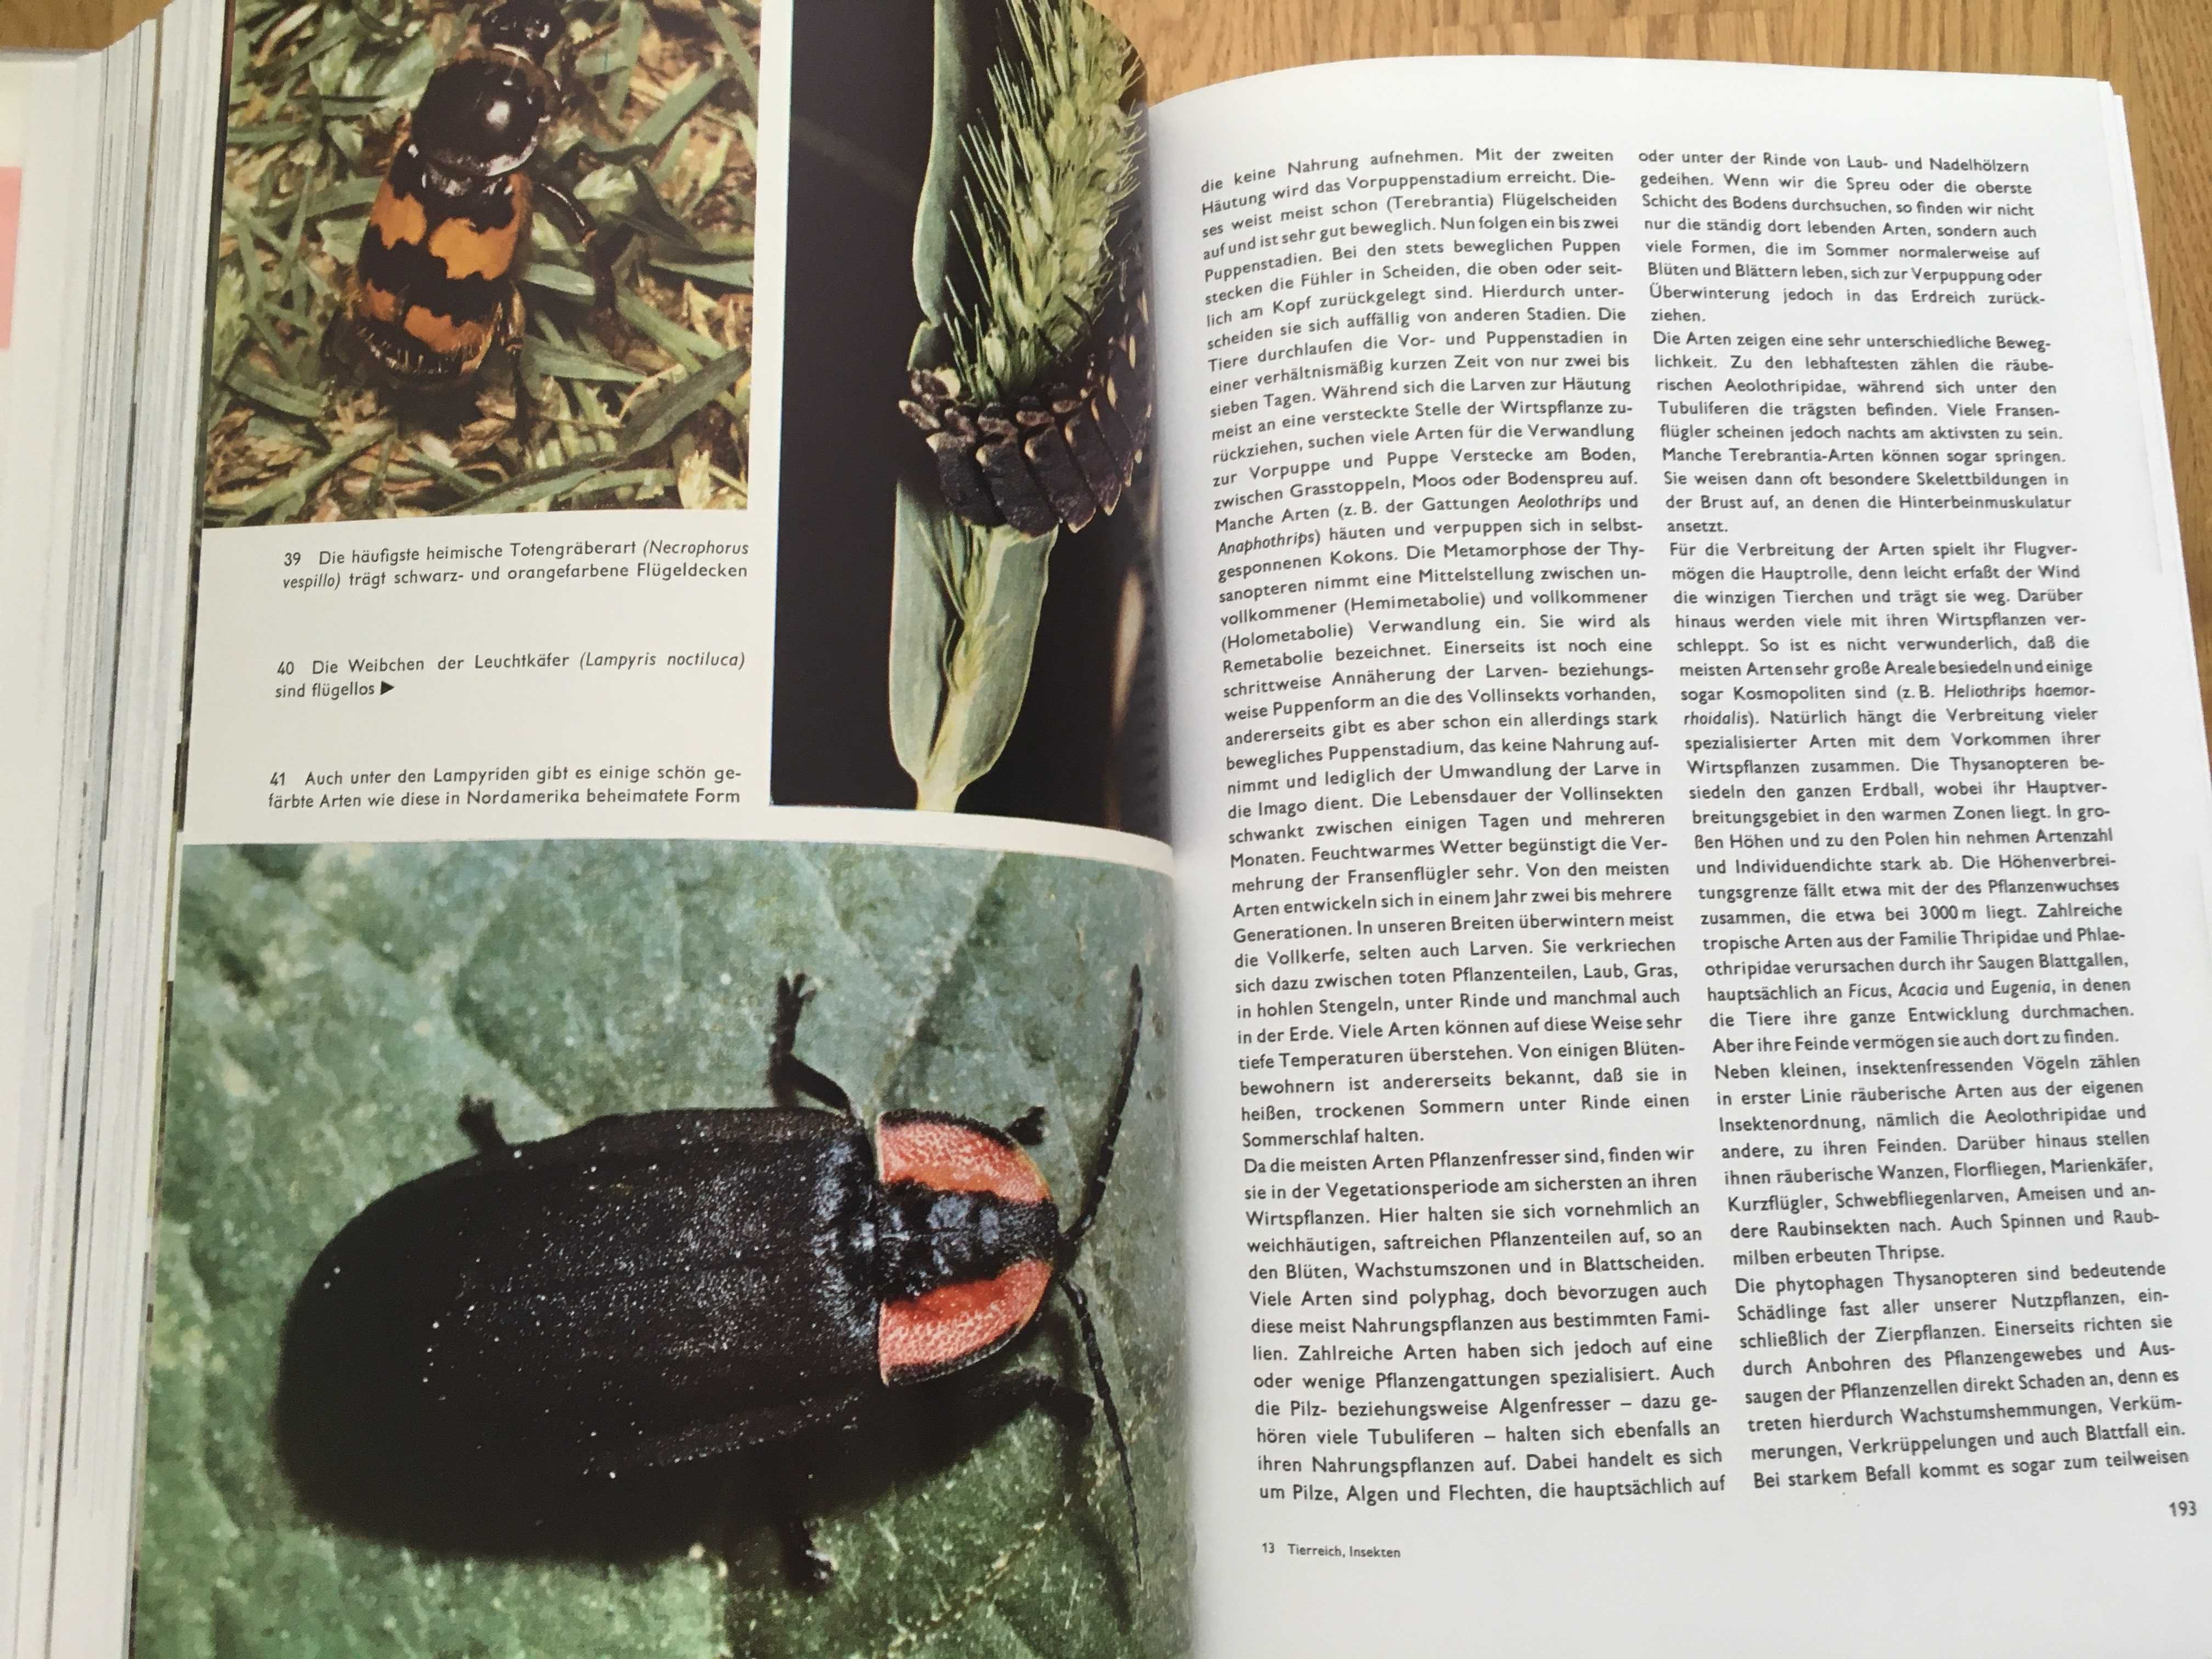 Urania Tierreich, энциклопедия на немецком, растения, птицы, насекомые